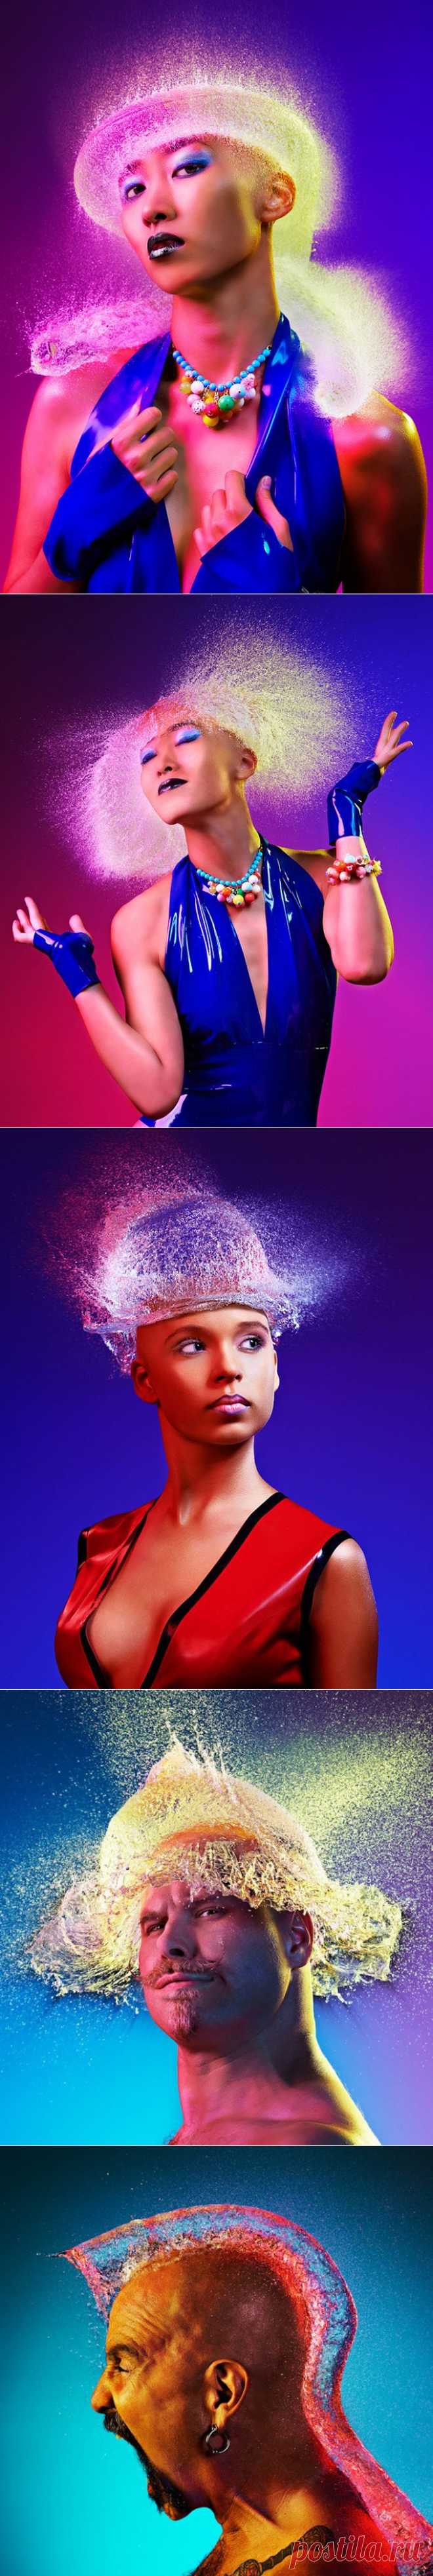 Невероятные парики из воды от Tim Tadder | Newpix.ru - позитивный интернет-журнал